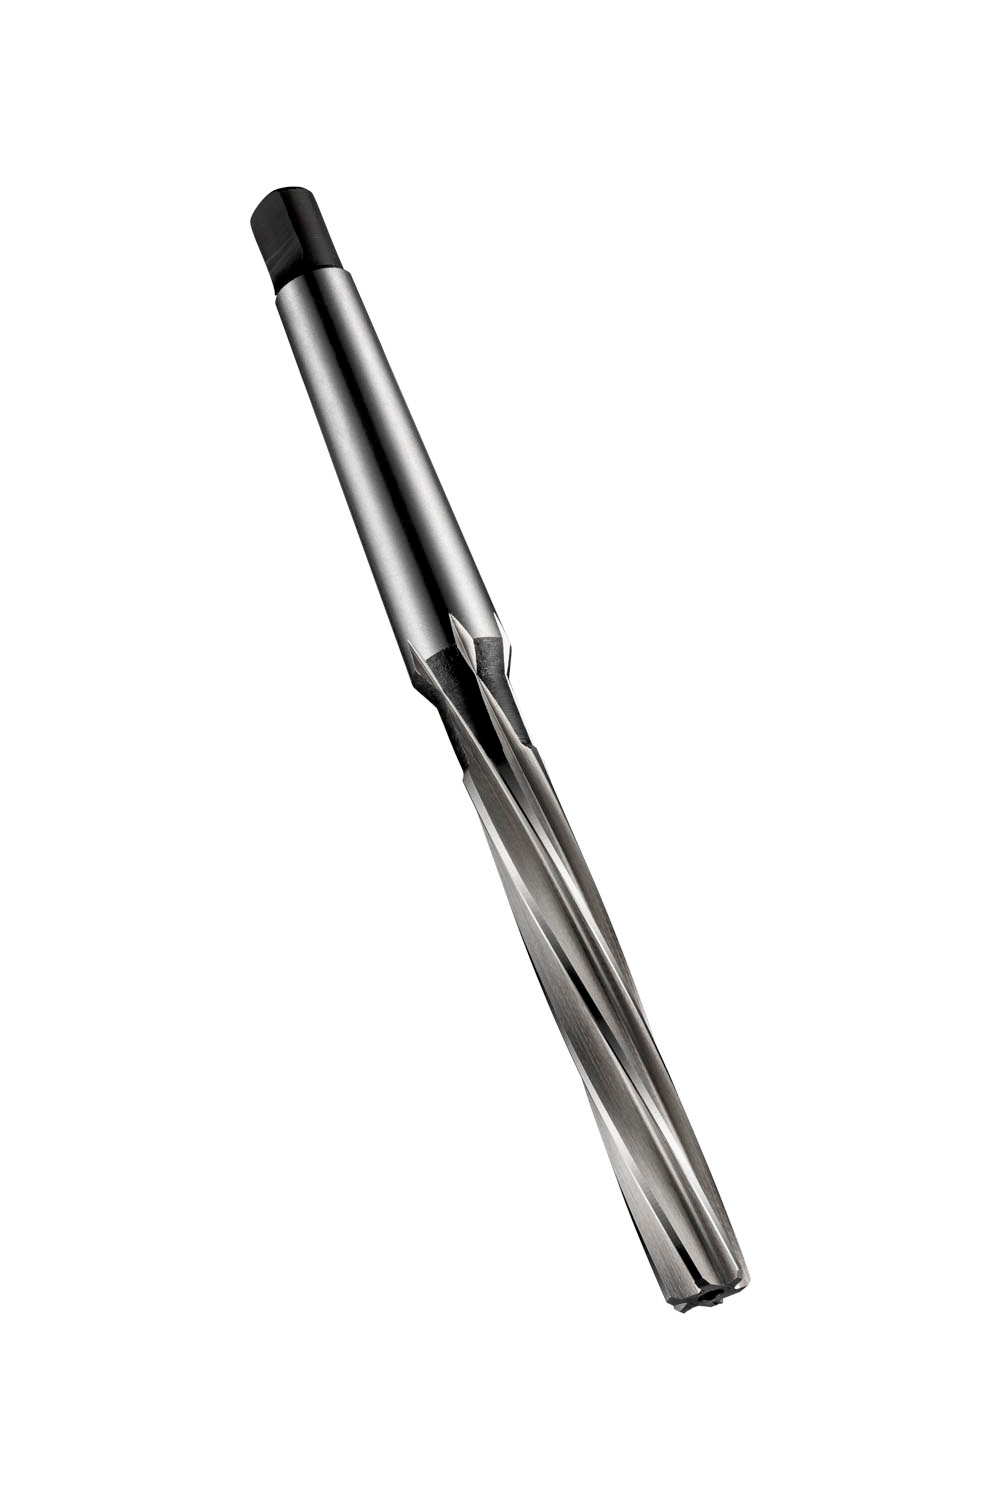 Cobalt Head Diameter 5.95 mm Full Length 93 mm Dormer B90115/64 Reamer Flute Length 47 mm 